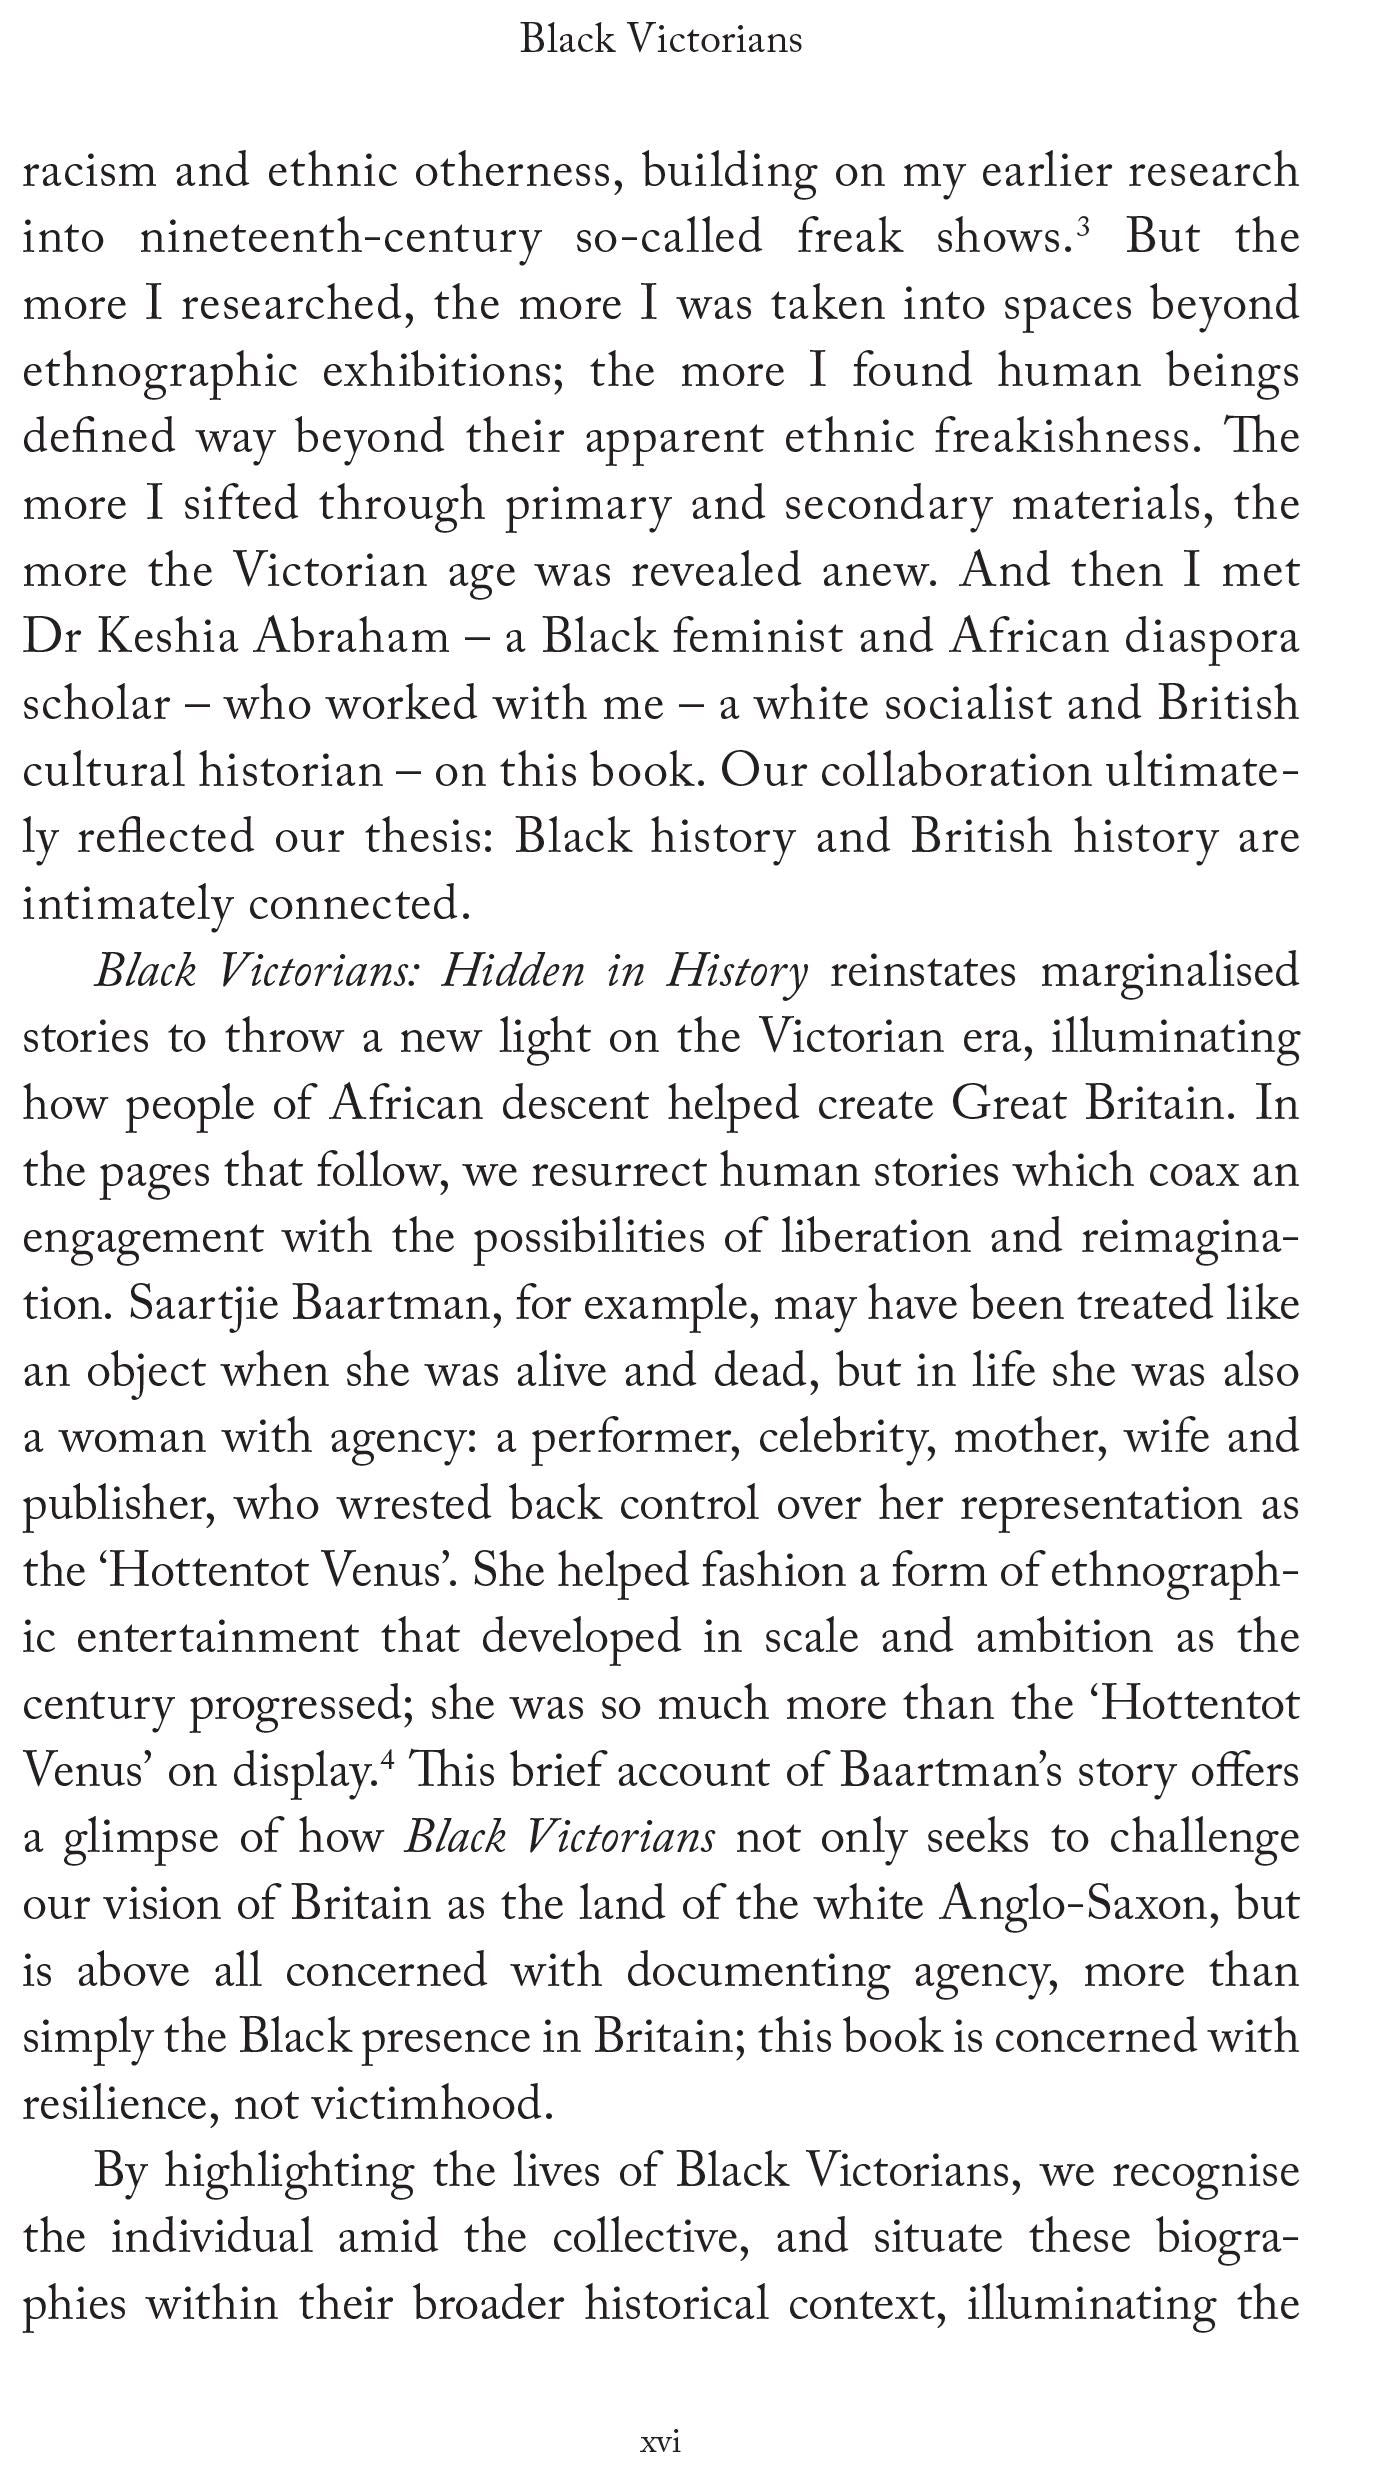 Black Victorians Hidden in History